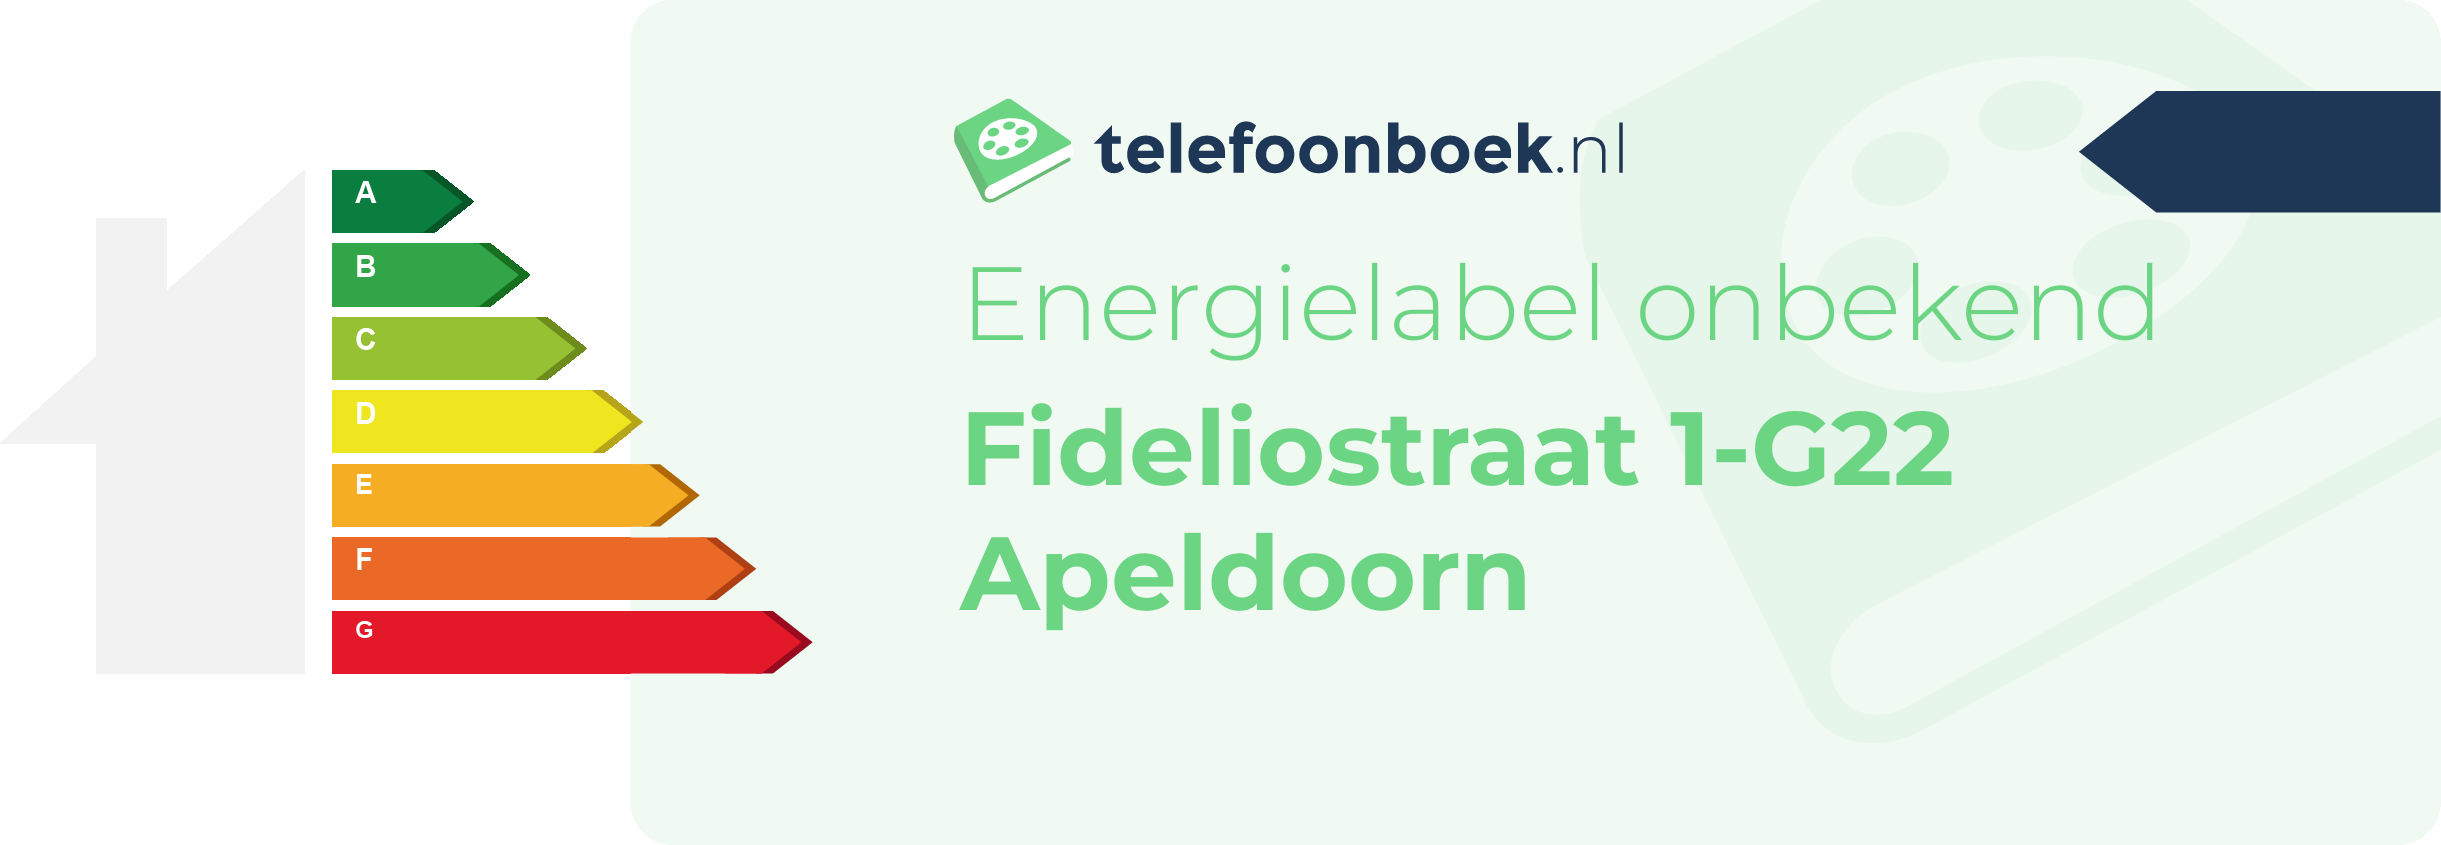 Energielabel Fideliostraat 1-G22 Apeldoorn